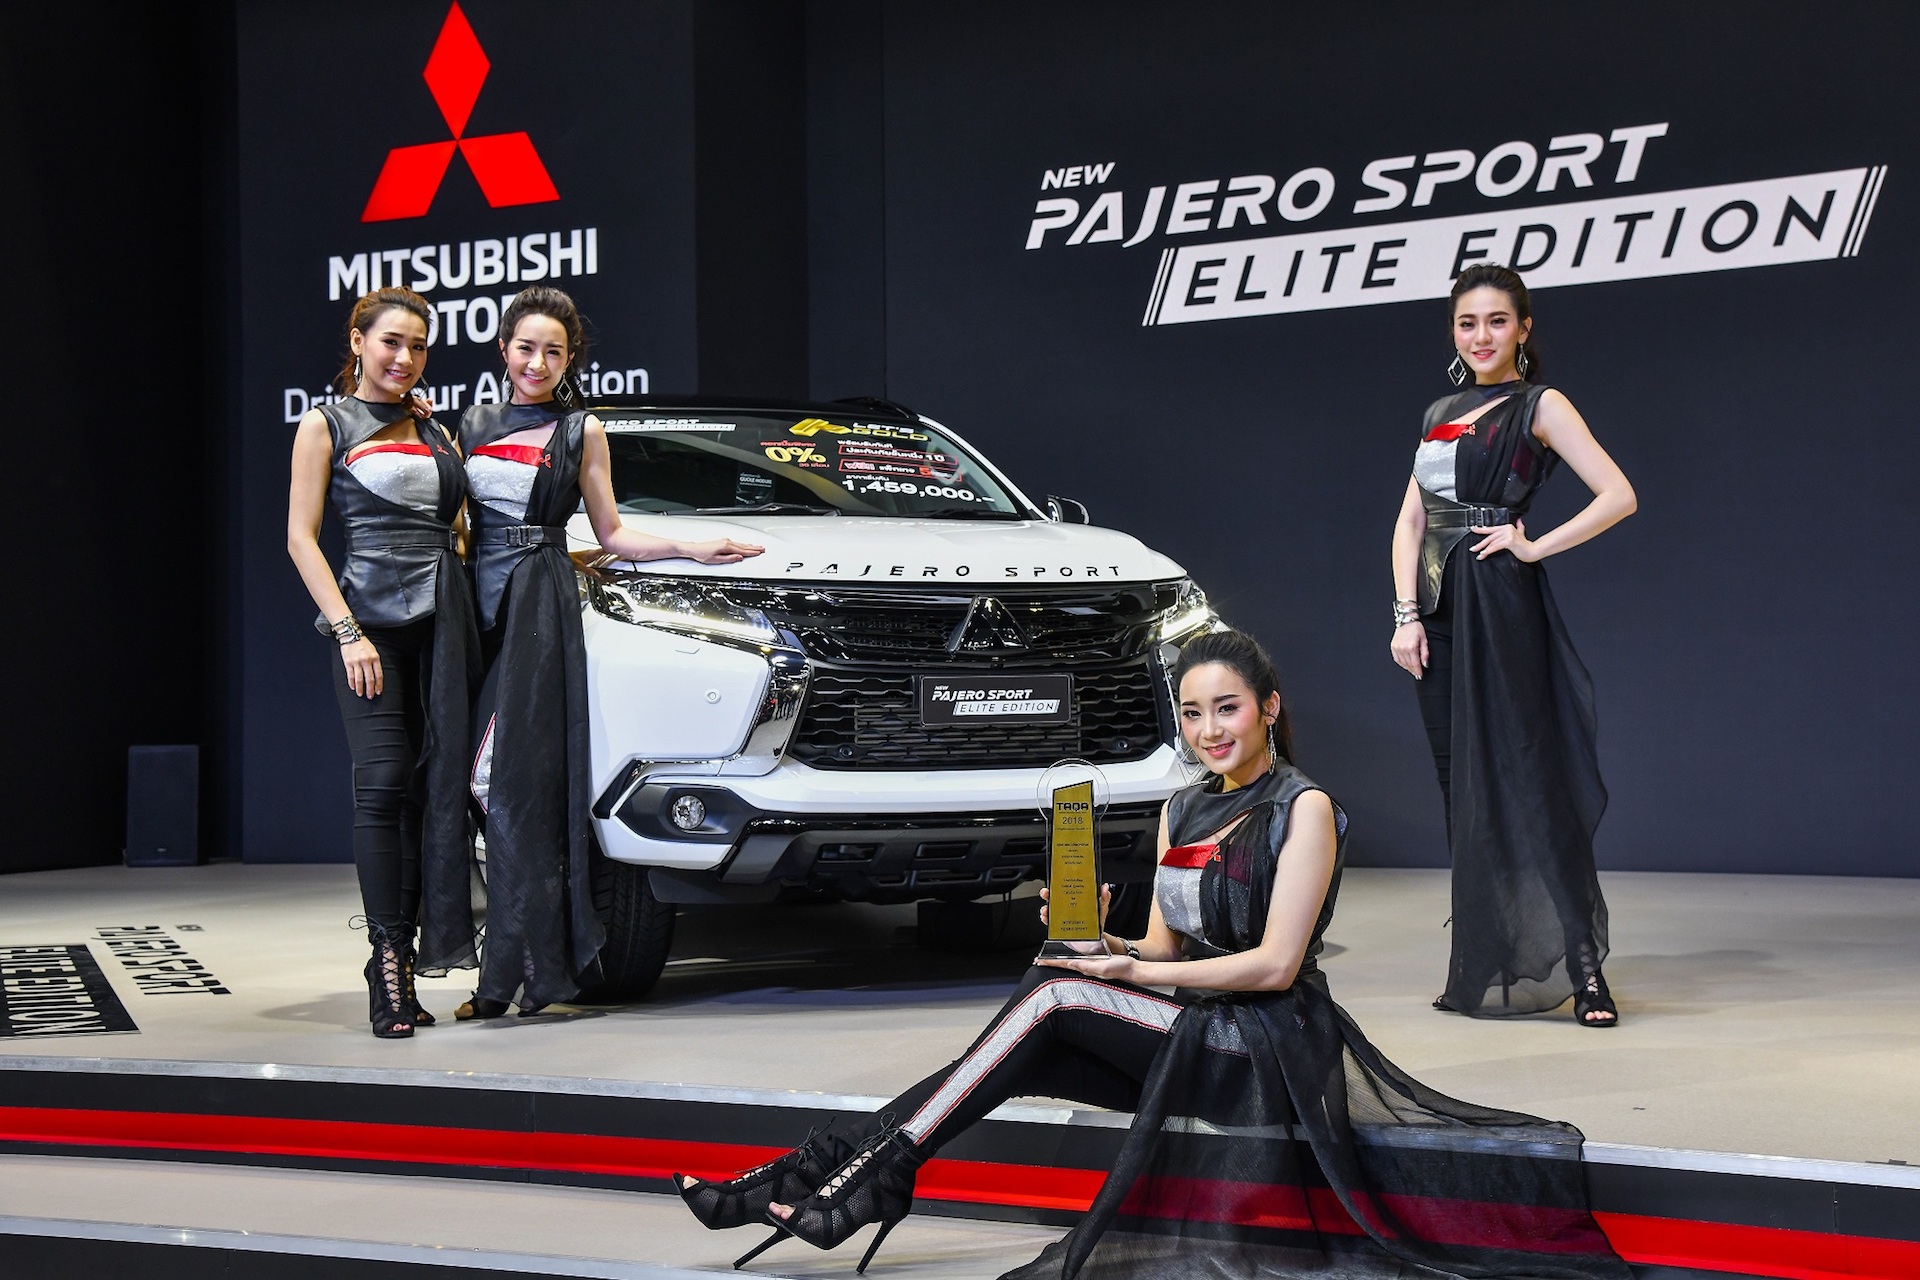  มิตซูบิชิ ปาเจโร สปอร์ต  ความลงตัวของสมรรถนะและความปลอดภัย / Performance Meets Safety in Mitsubishi Pajero Sport
